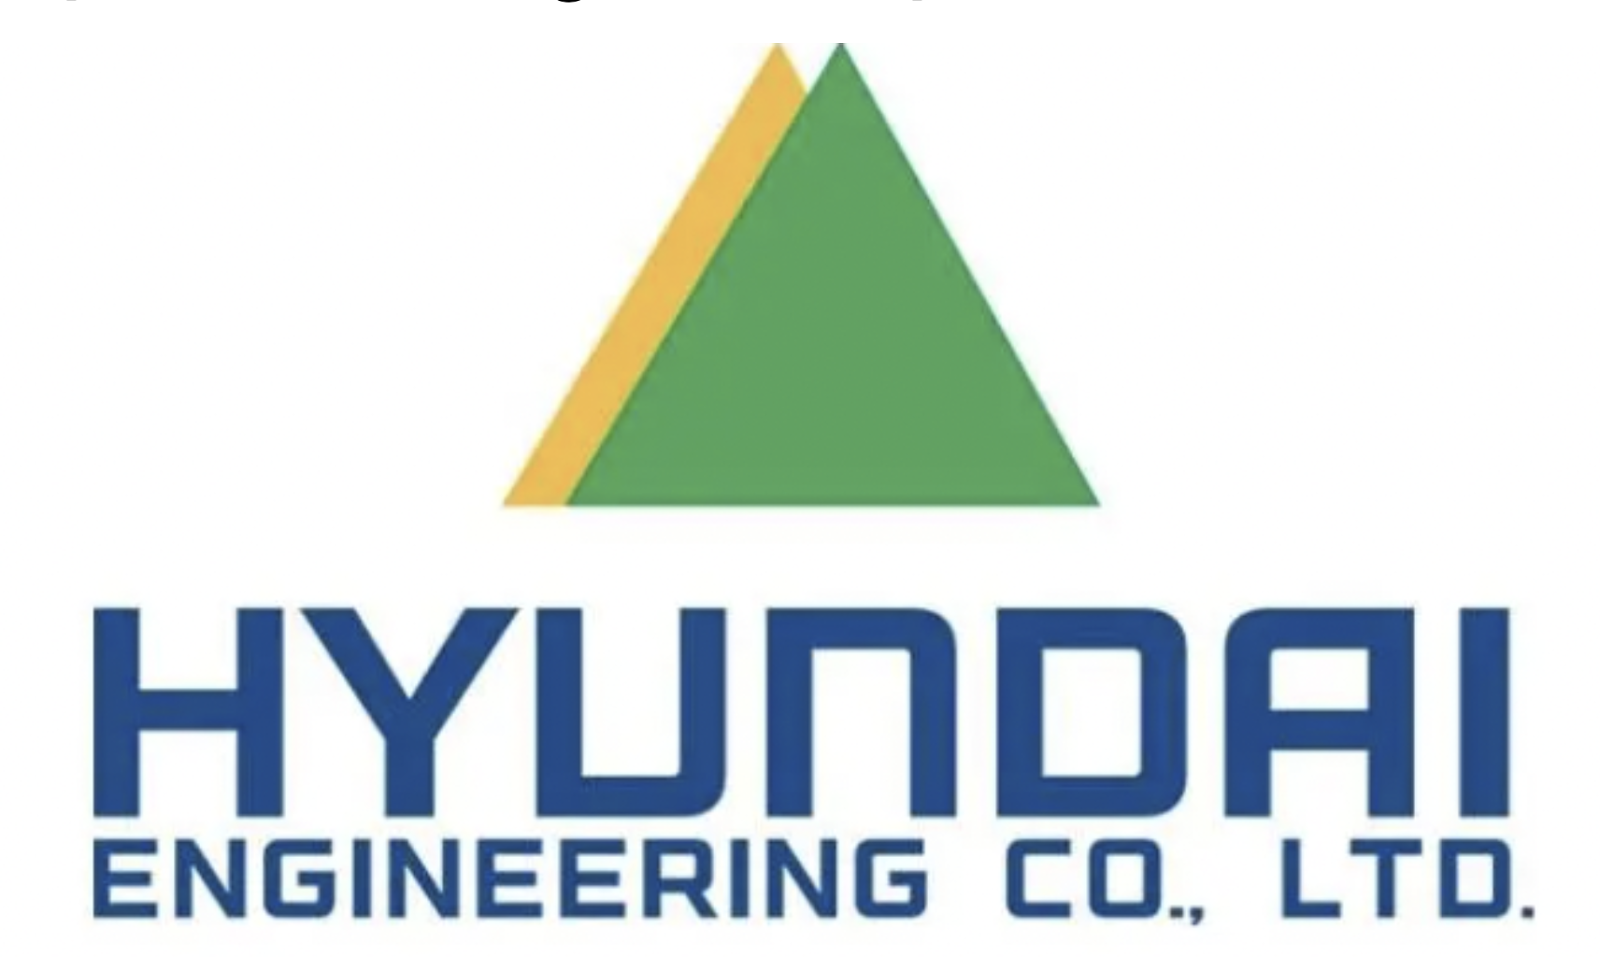 Hyundai's logo